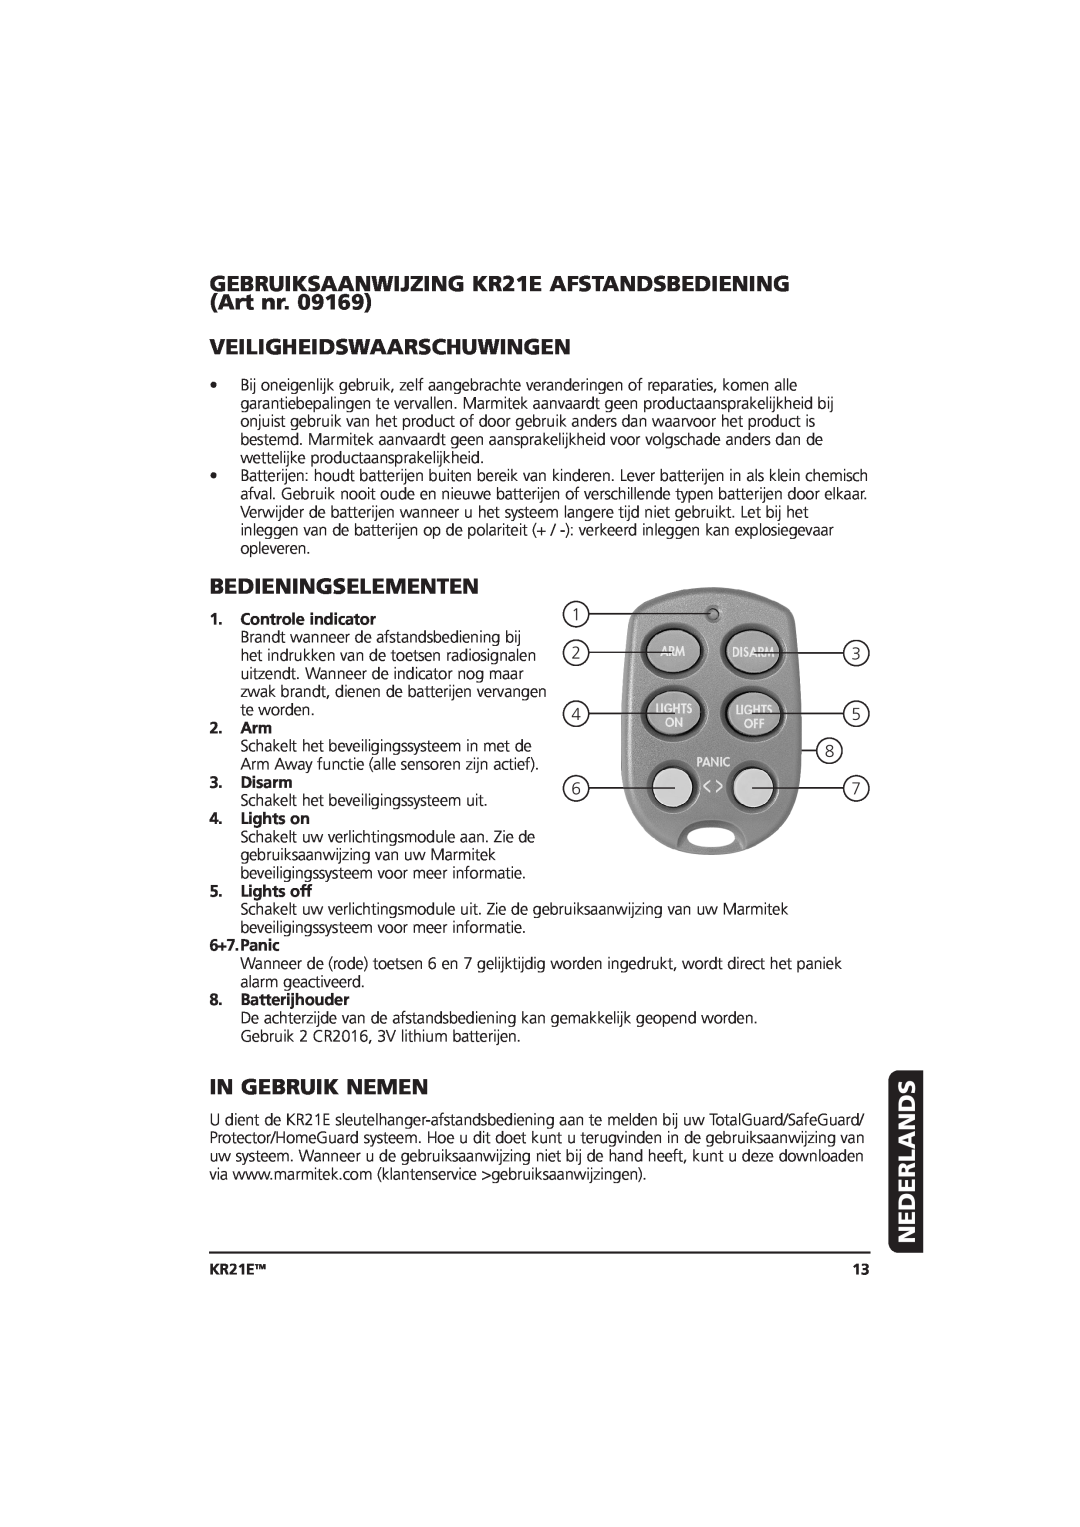 Marmitek 20075/20070403 Nederlands, Veiligheidswaarschuwingen, Bedieningselementen, In Gebruik Nemen, Controle indicator 